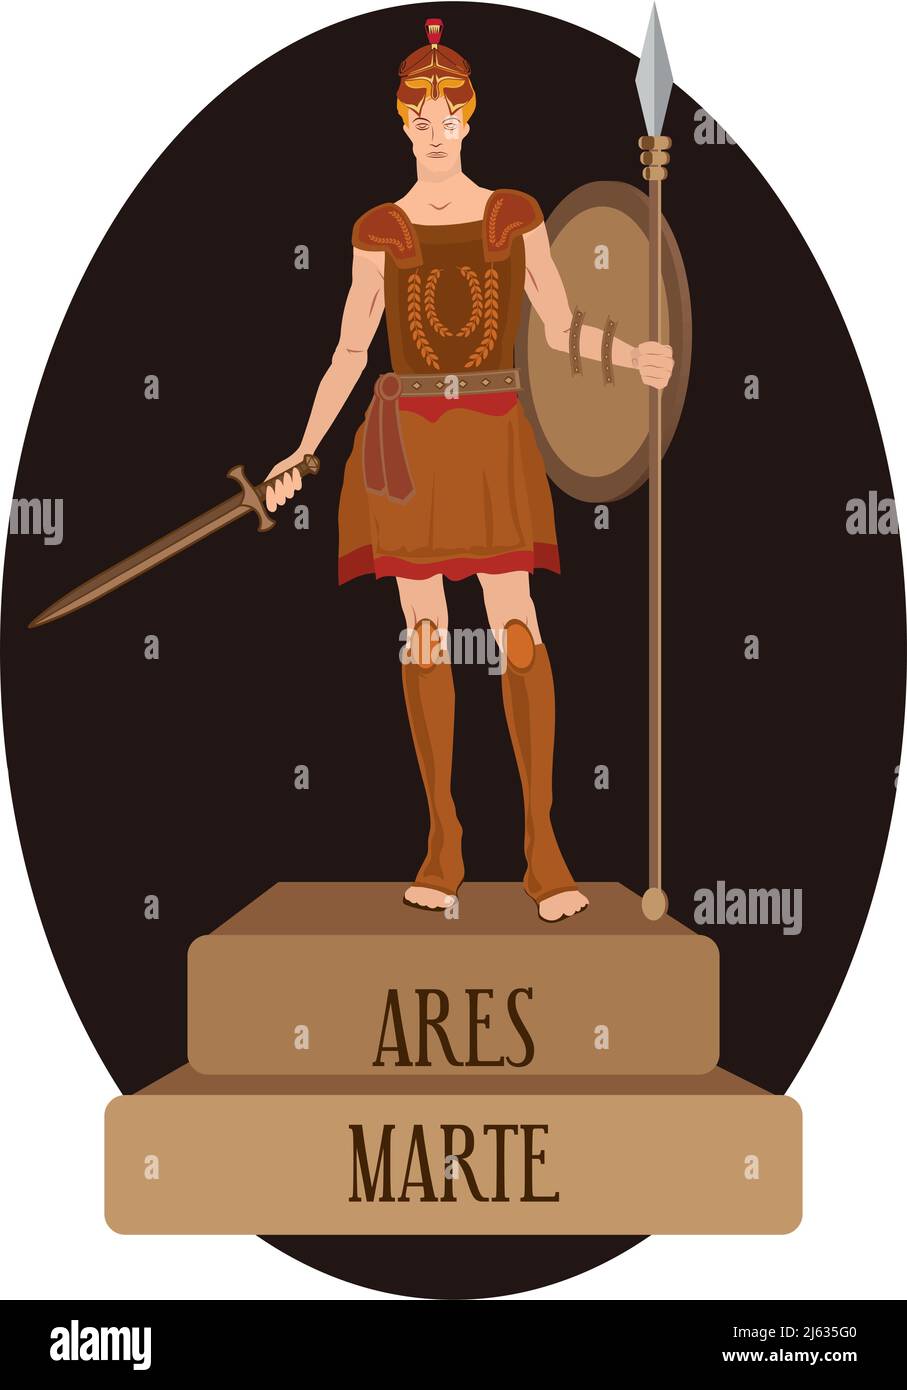 Vecteur d'illustration isolé des dieux romains et grecs, Ares, Marte Illustration de Vecteur